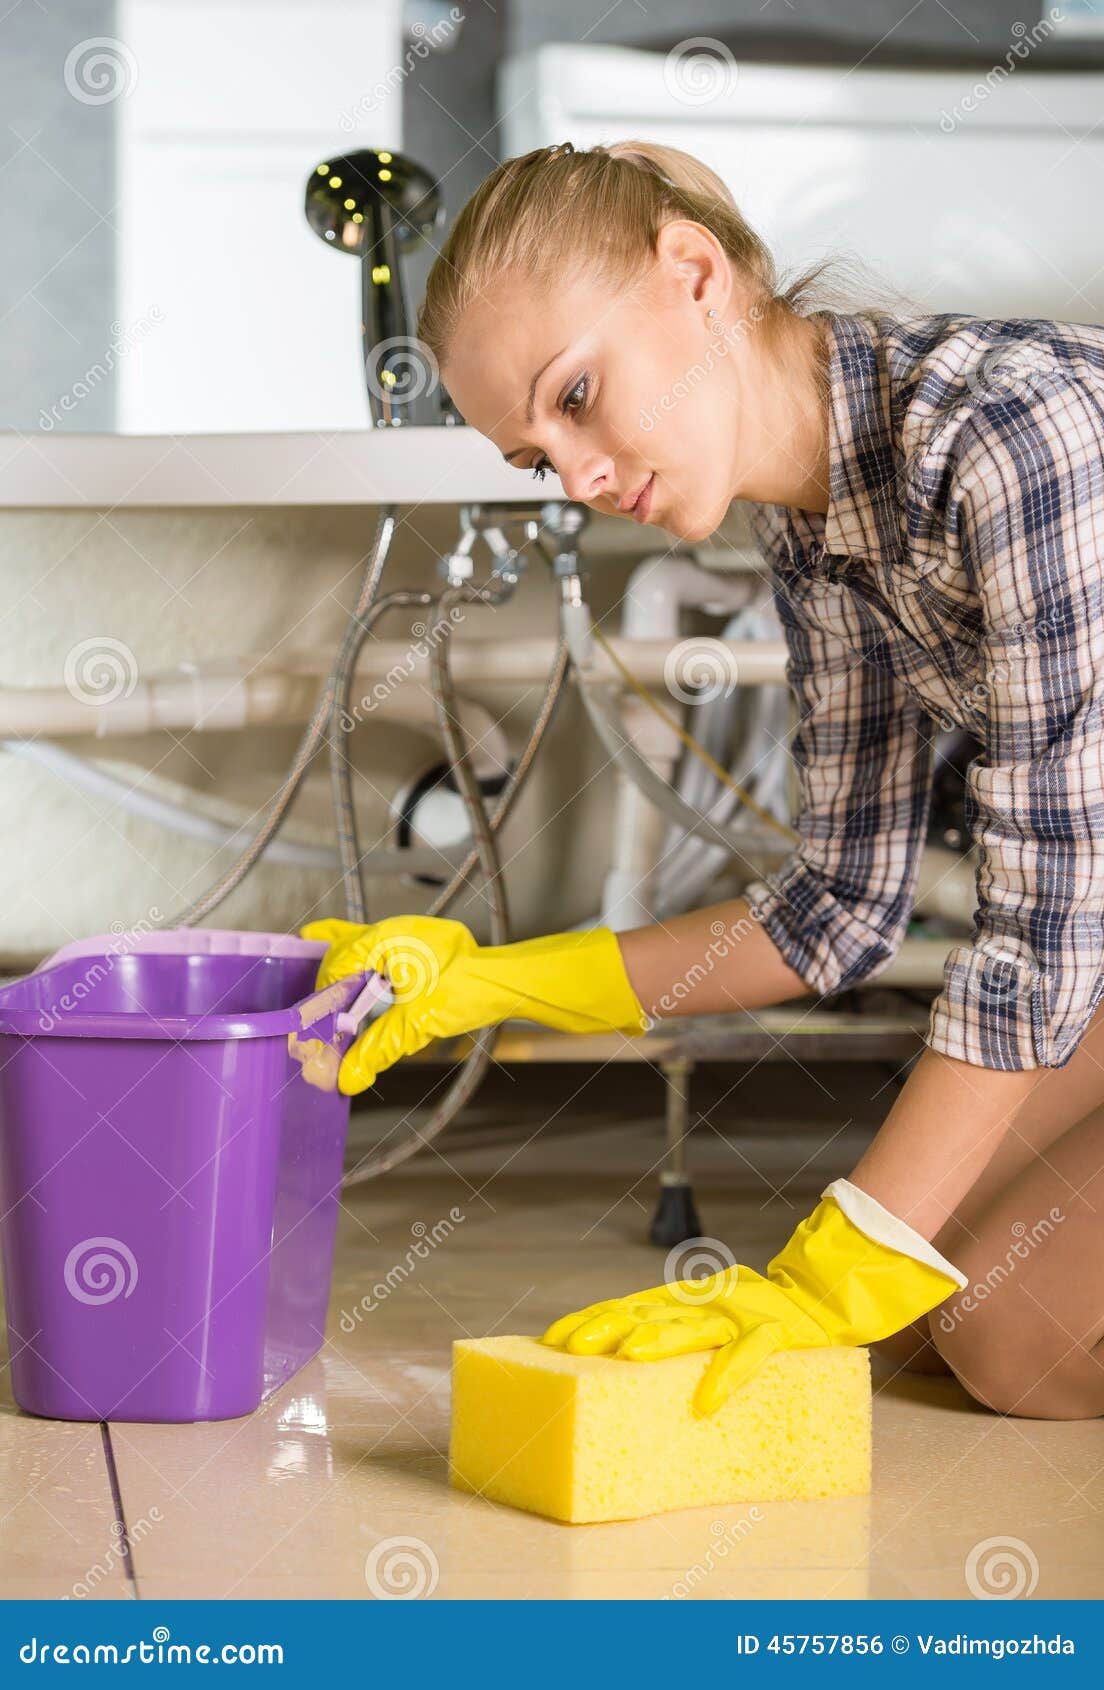 Полотенцем можно мыть полы. Домохозяйка моет пол. Девушка моет пол. Девушка моющая посуду губкой. Девушка моет пол посуду.